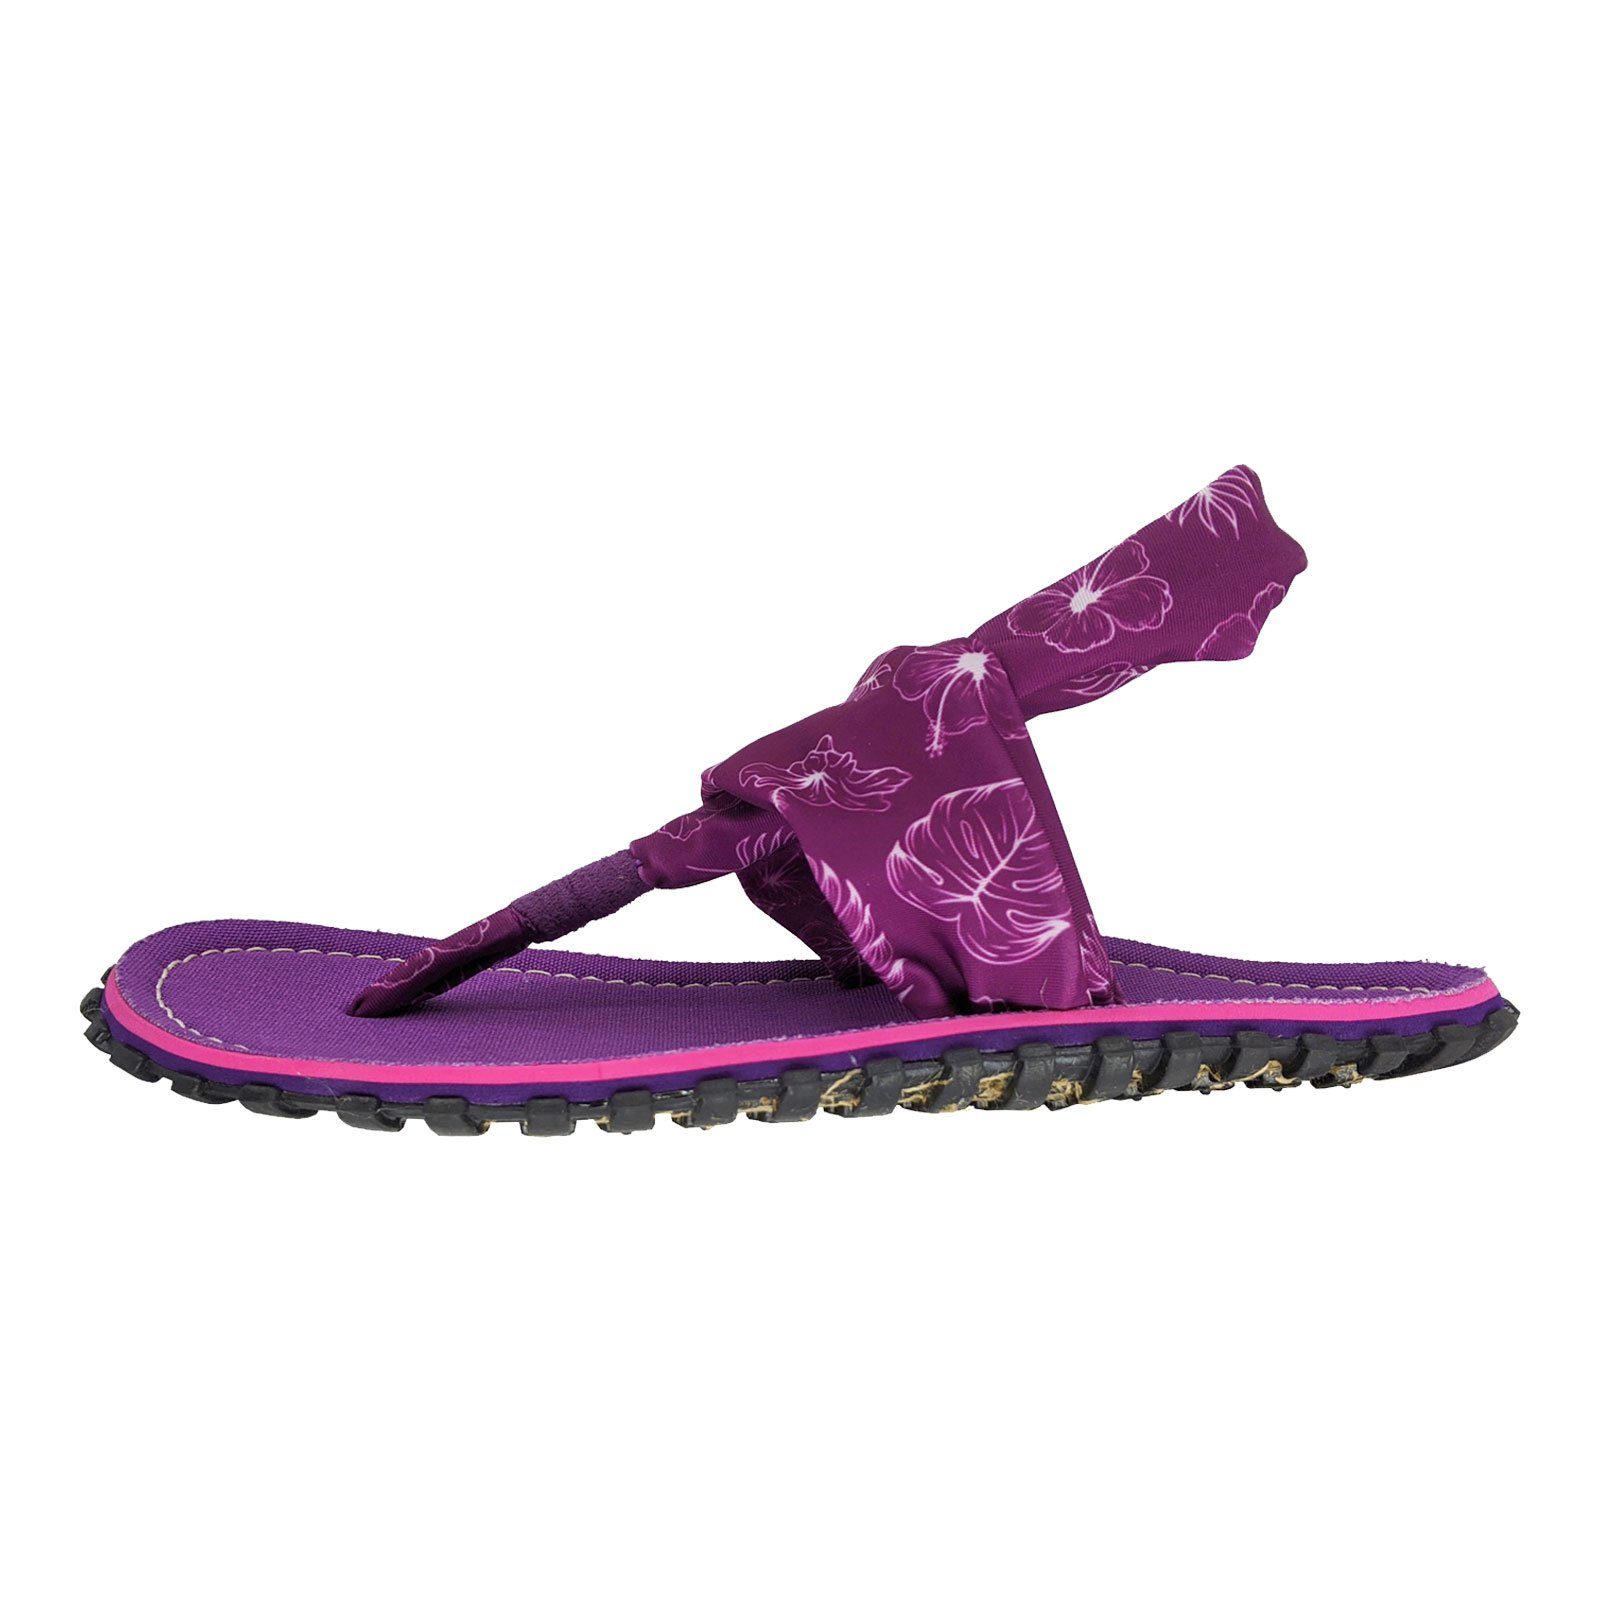 Gumbies Slingback purple Sandale Stoff-Riemen 2602 mit